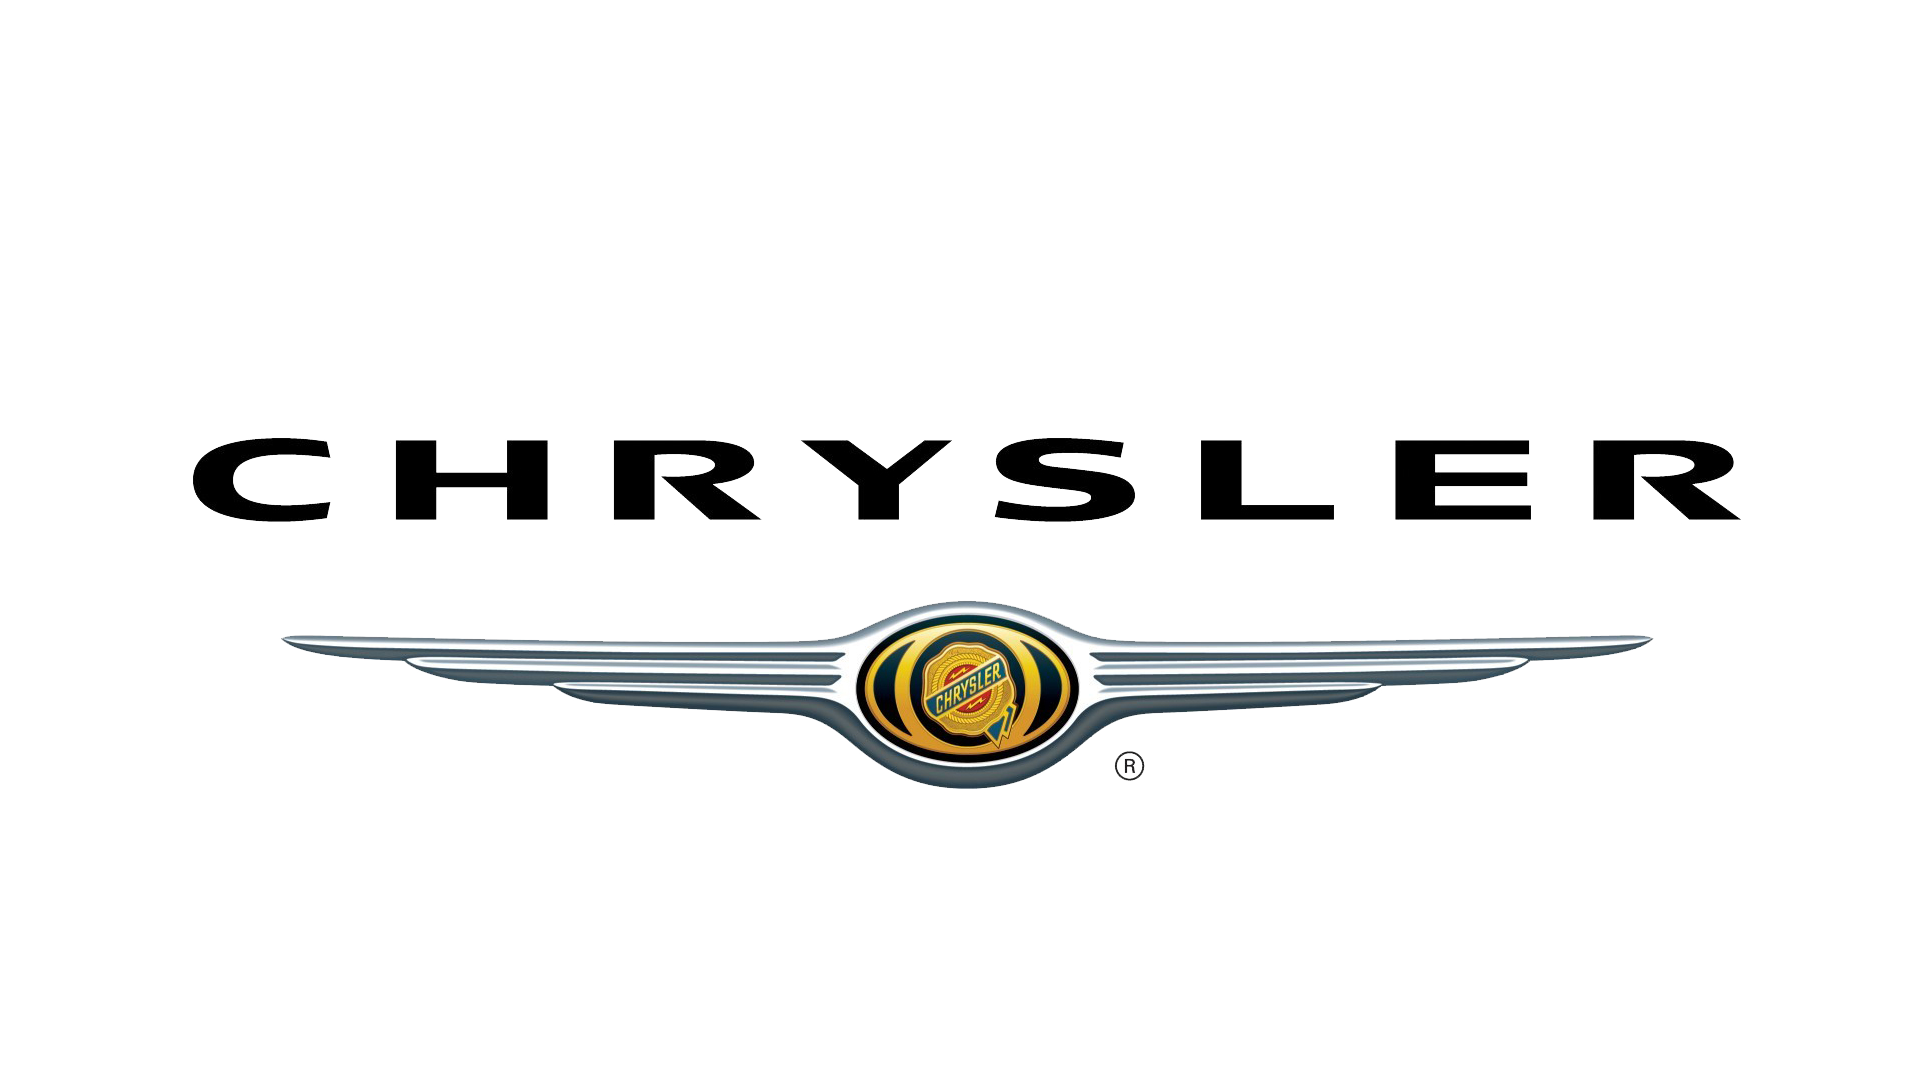 Chrysler-logo-1998-1920x1080.png